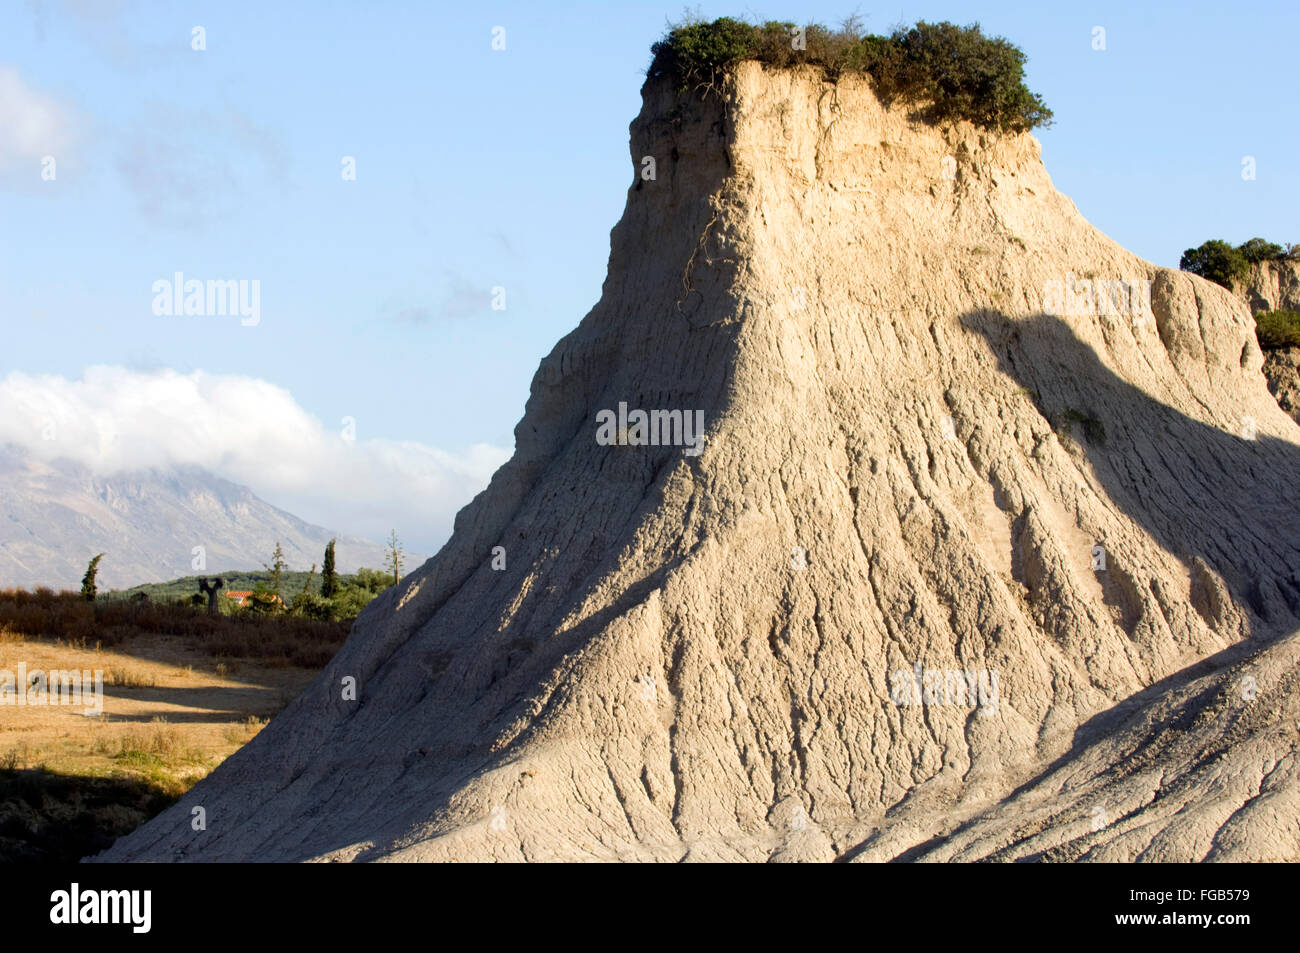 Griechenland, Kreta, bei Kissamos, Potamida, die Mergelkegel einer aufgelassenen Grube bei Potamida. Stock Photo